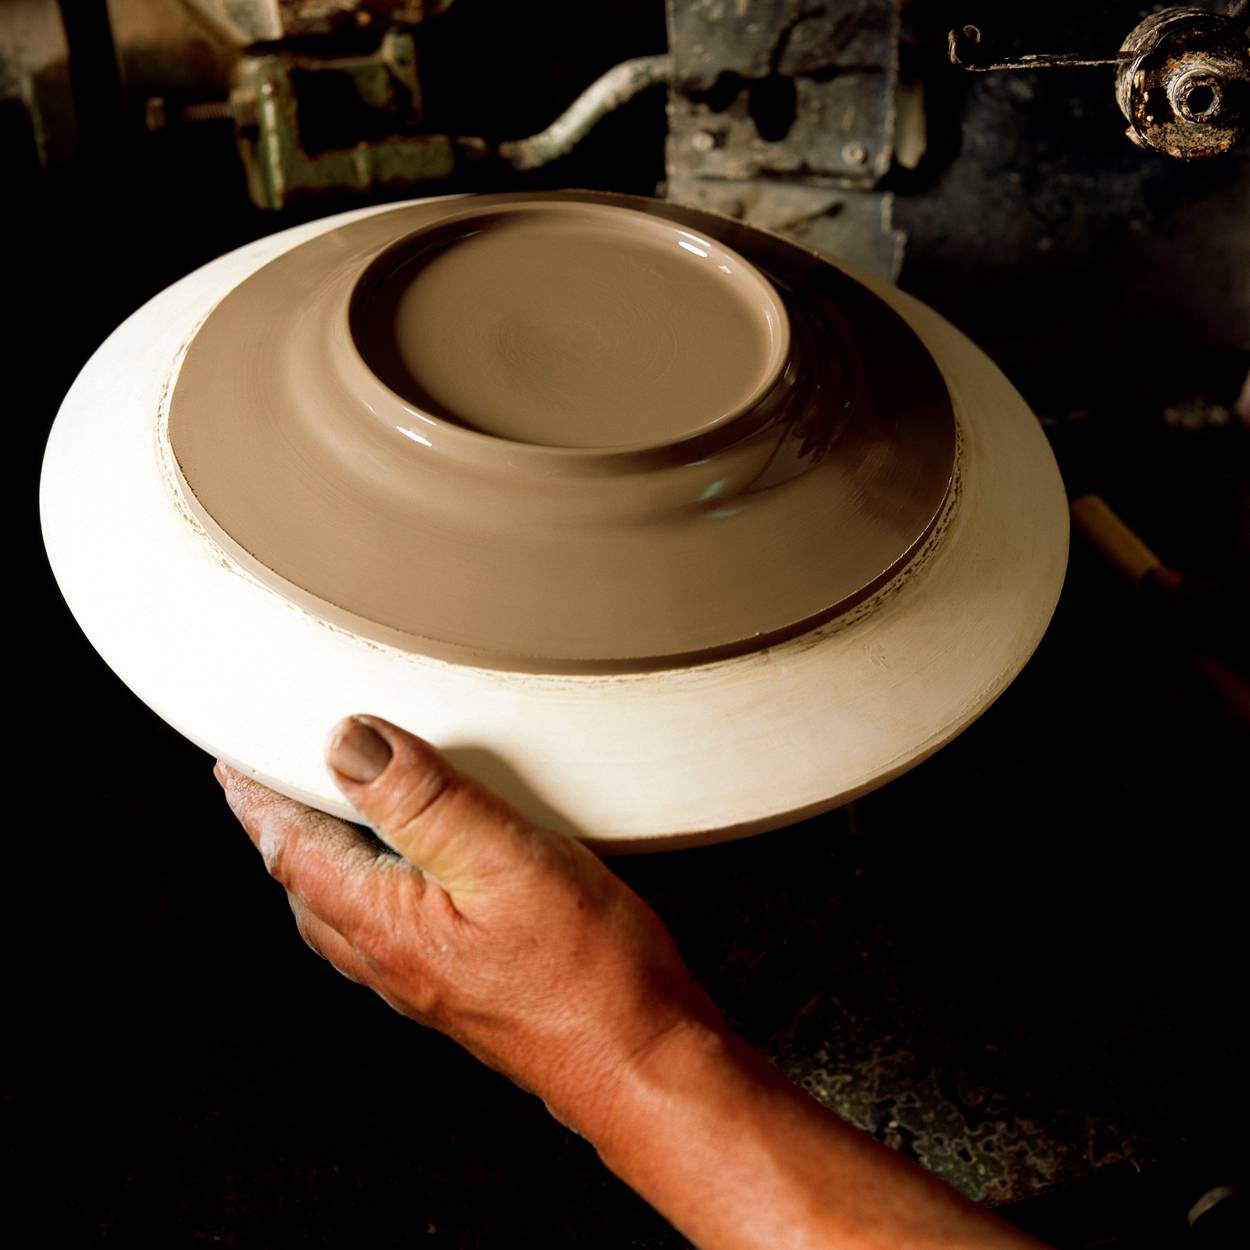 Vår produktion av keramik